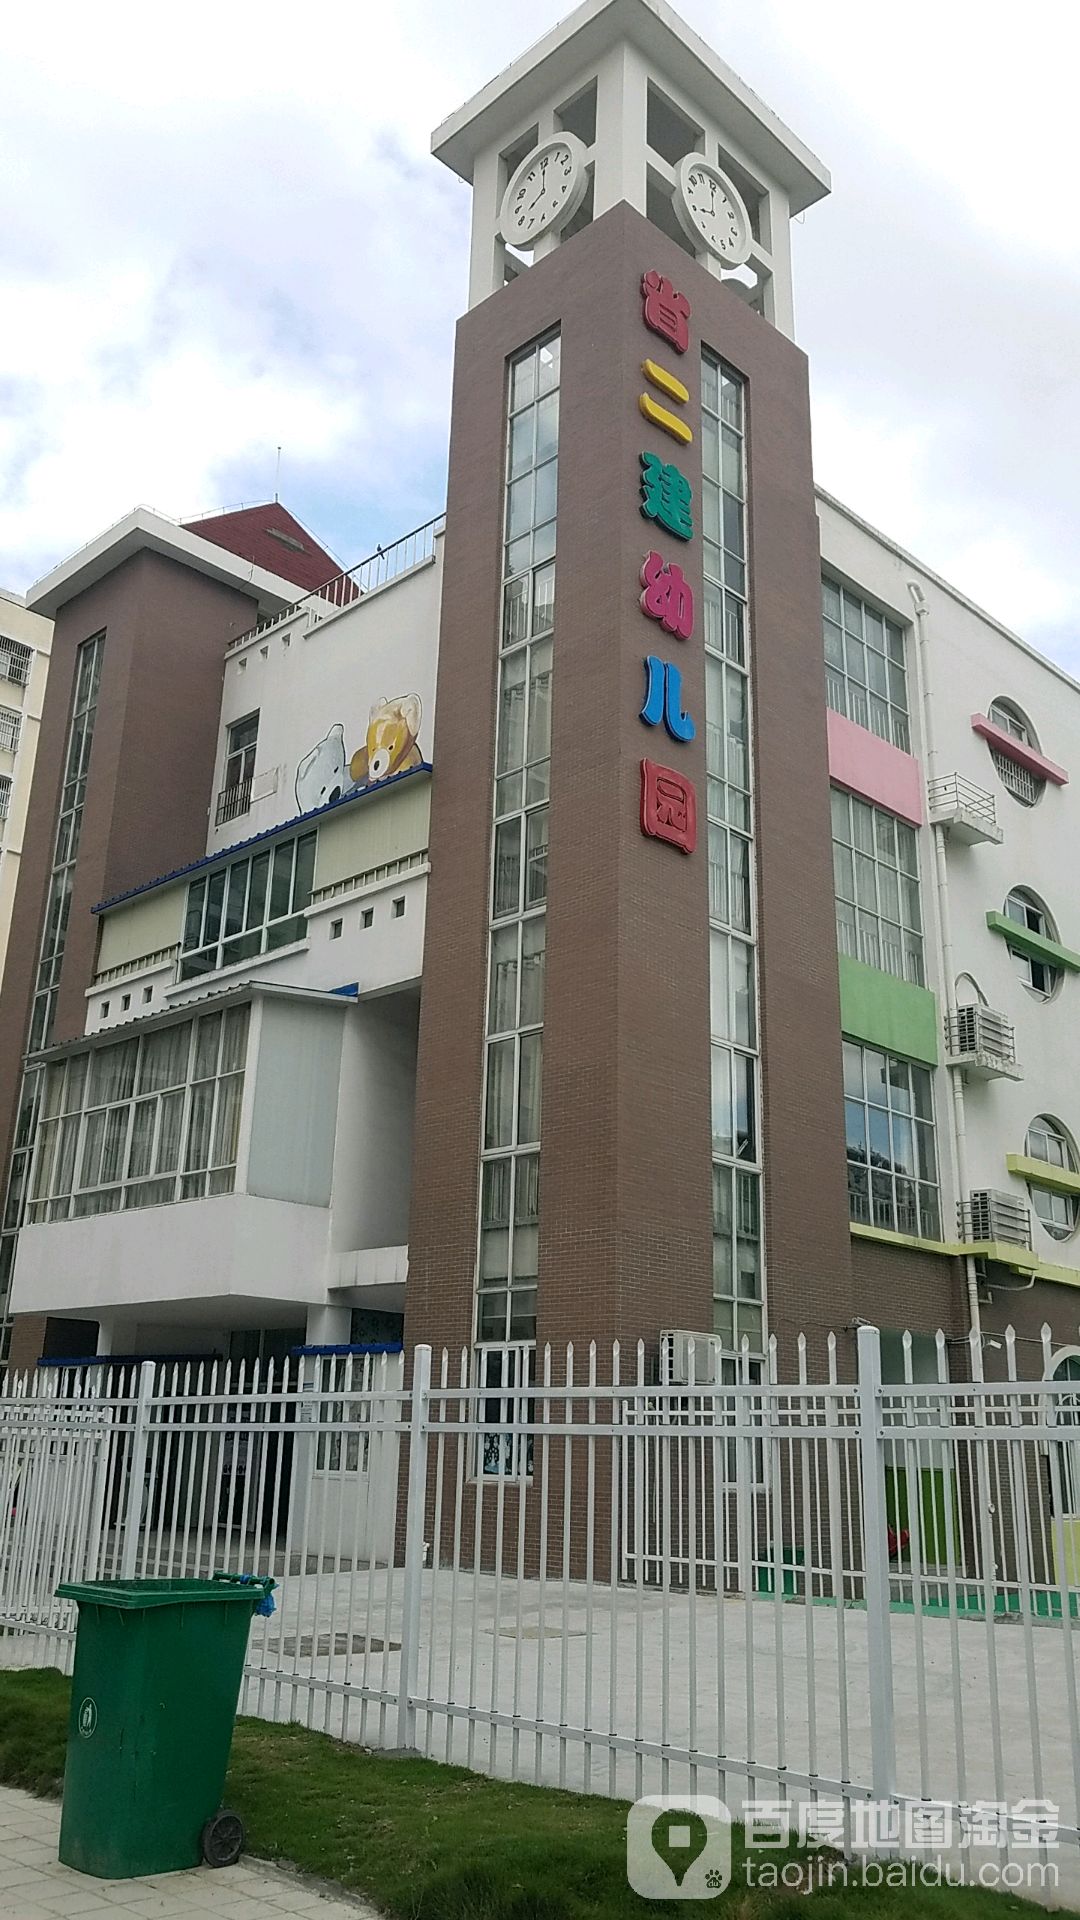 安徽省第二建筑工程公司幼儿园